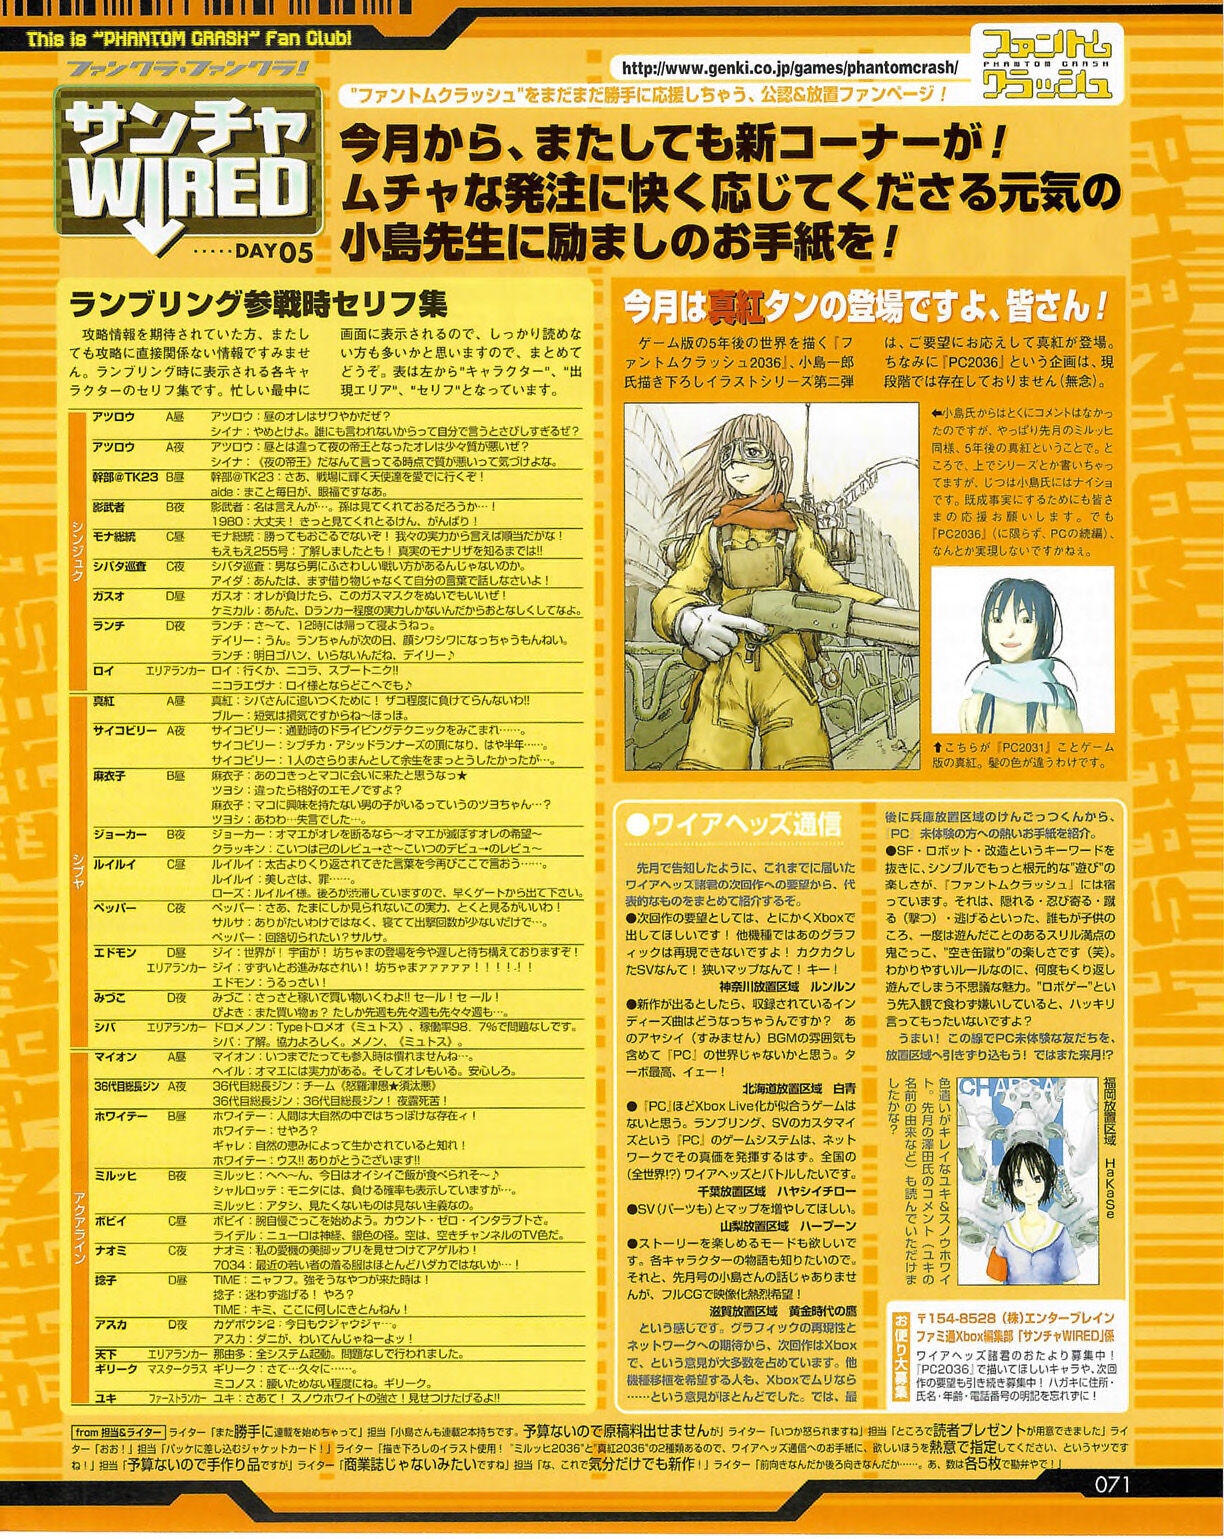 Famitsu_Xbox_2003-04_jp2 70